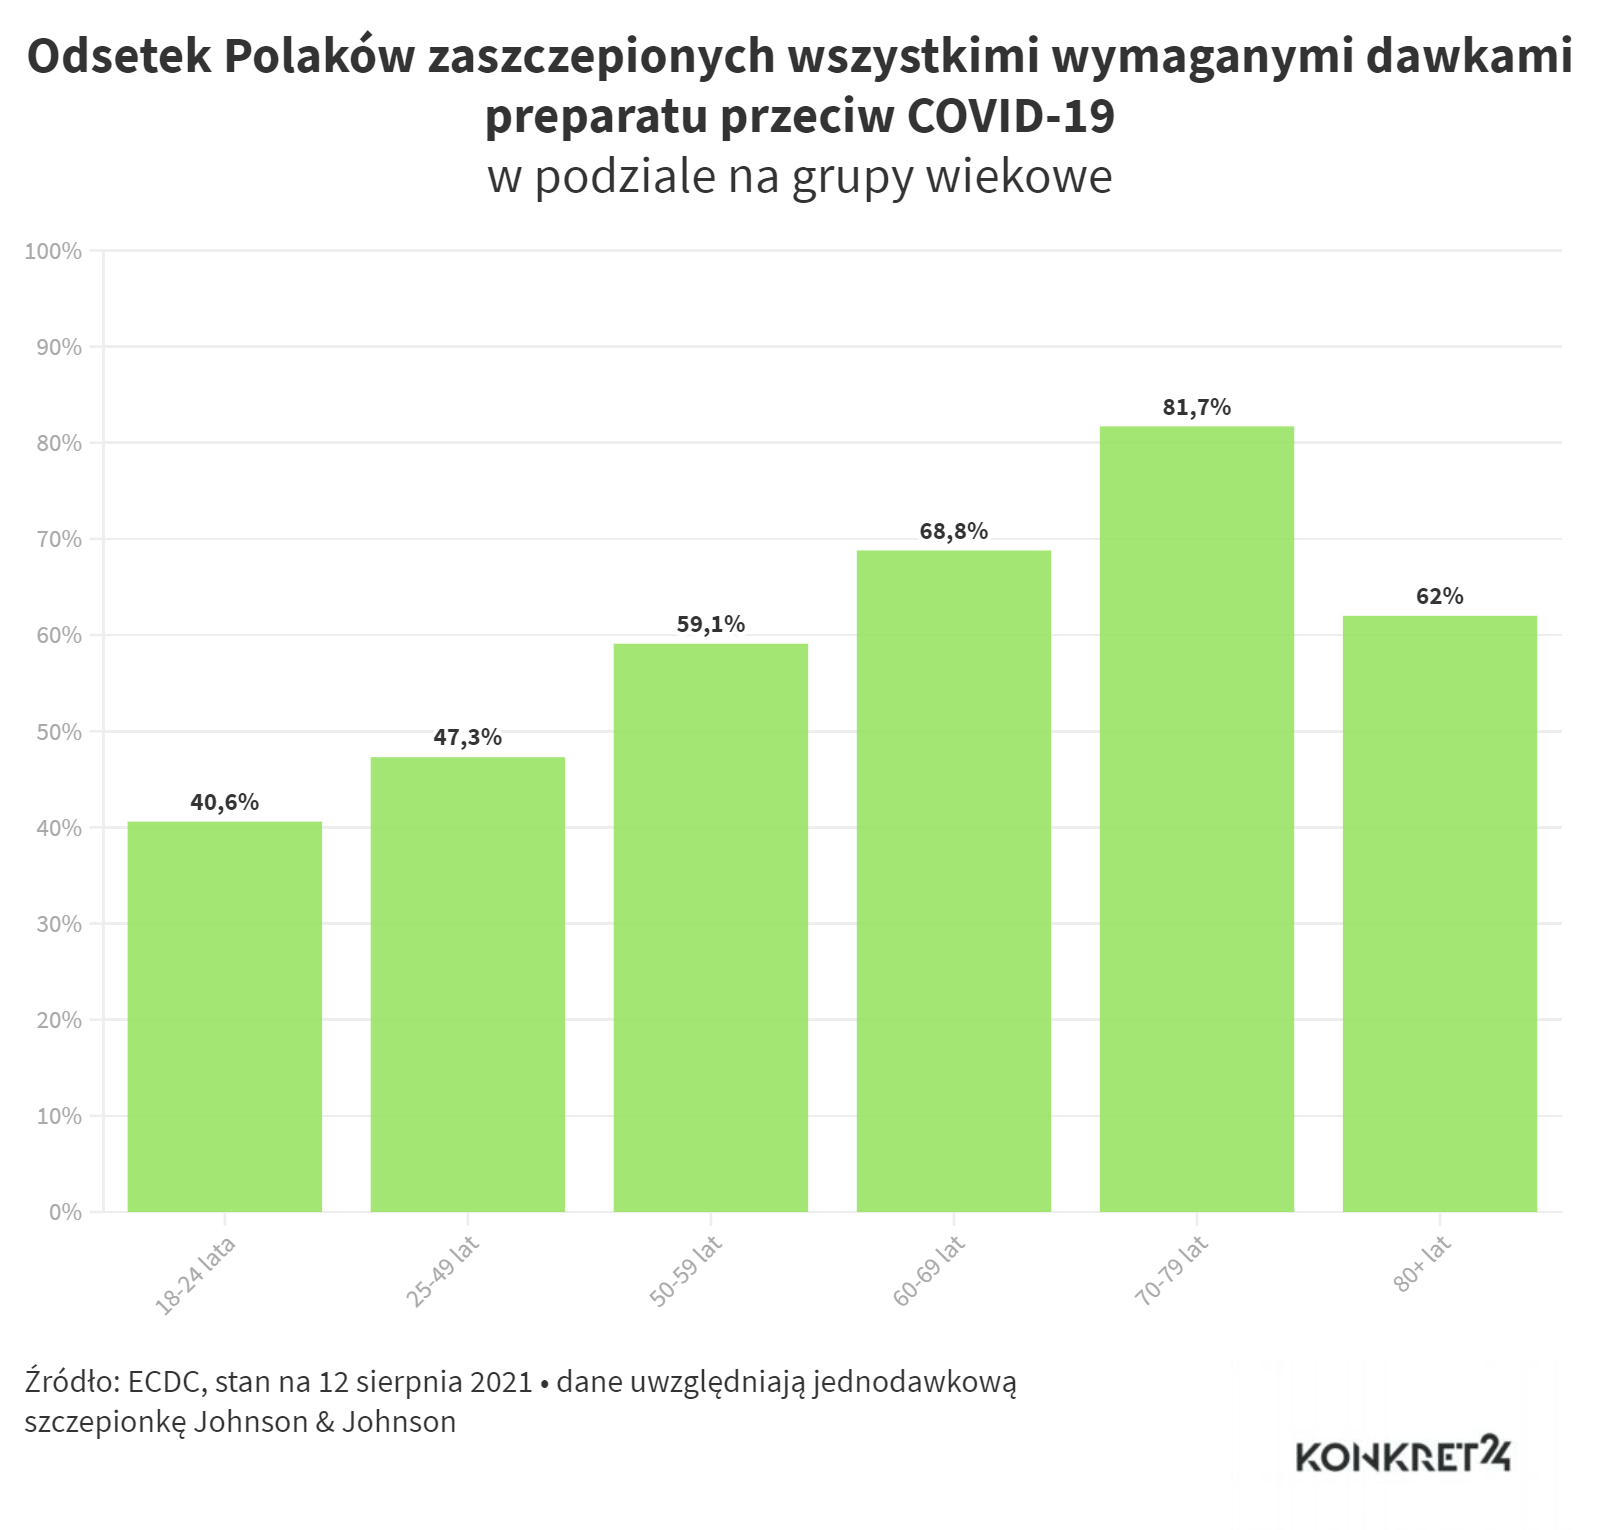 Procent zaszczepionych wszystkimi wymaganymi dawkami preparatu na COVID-19 w poszczególnych grupach wiekowych w Polsce (stan na 12 sierpnia 2021)